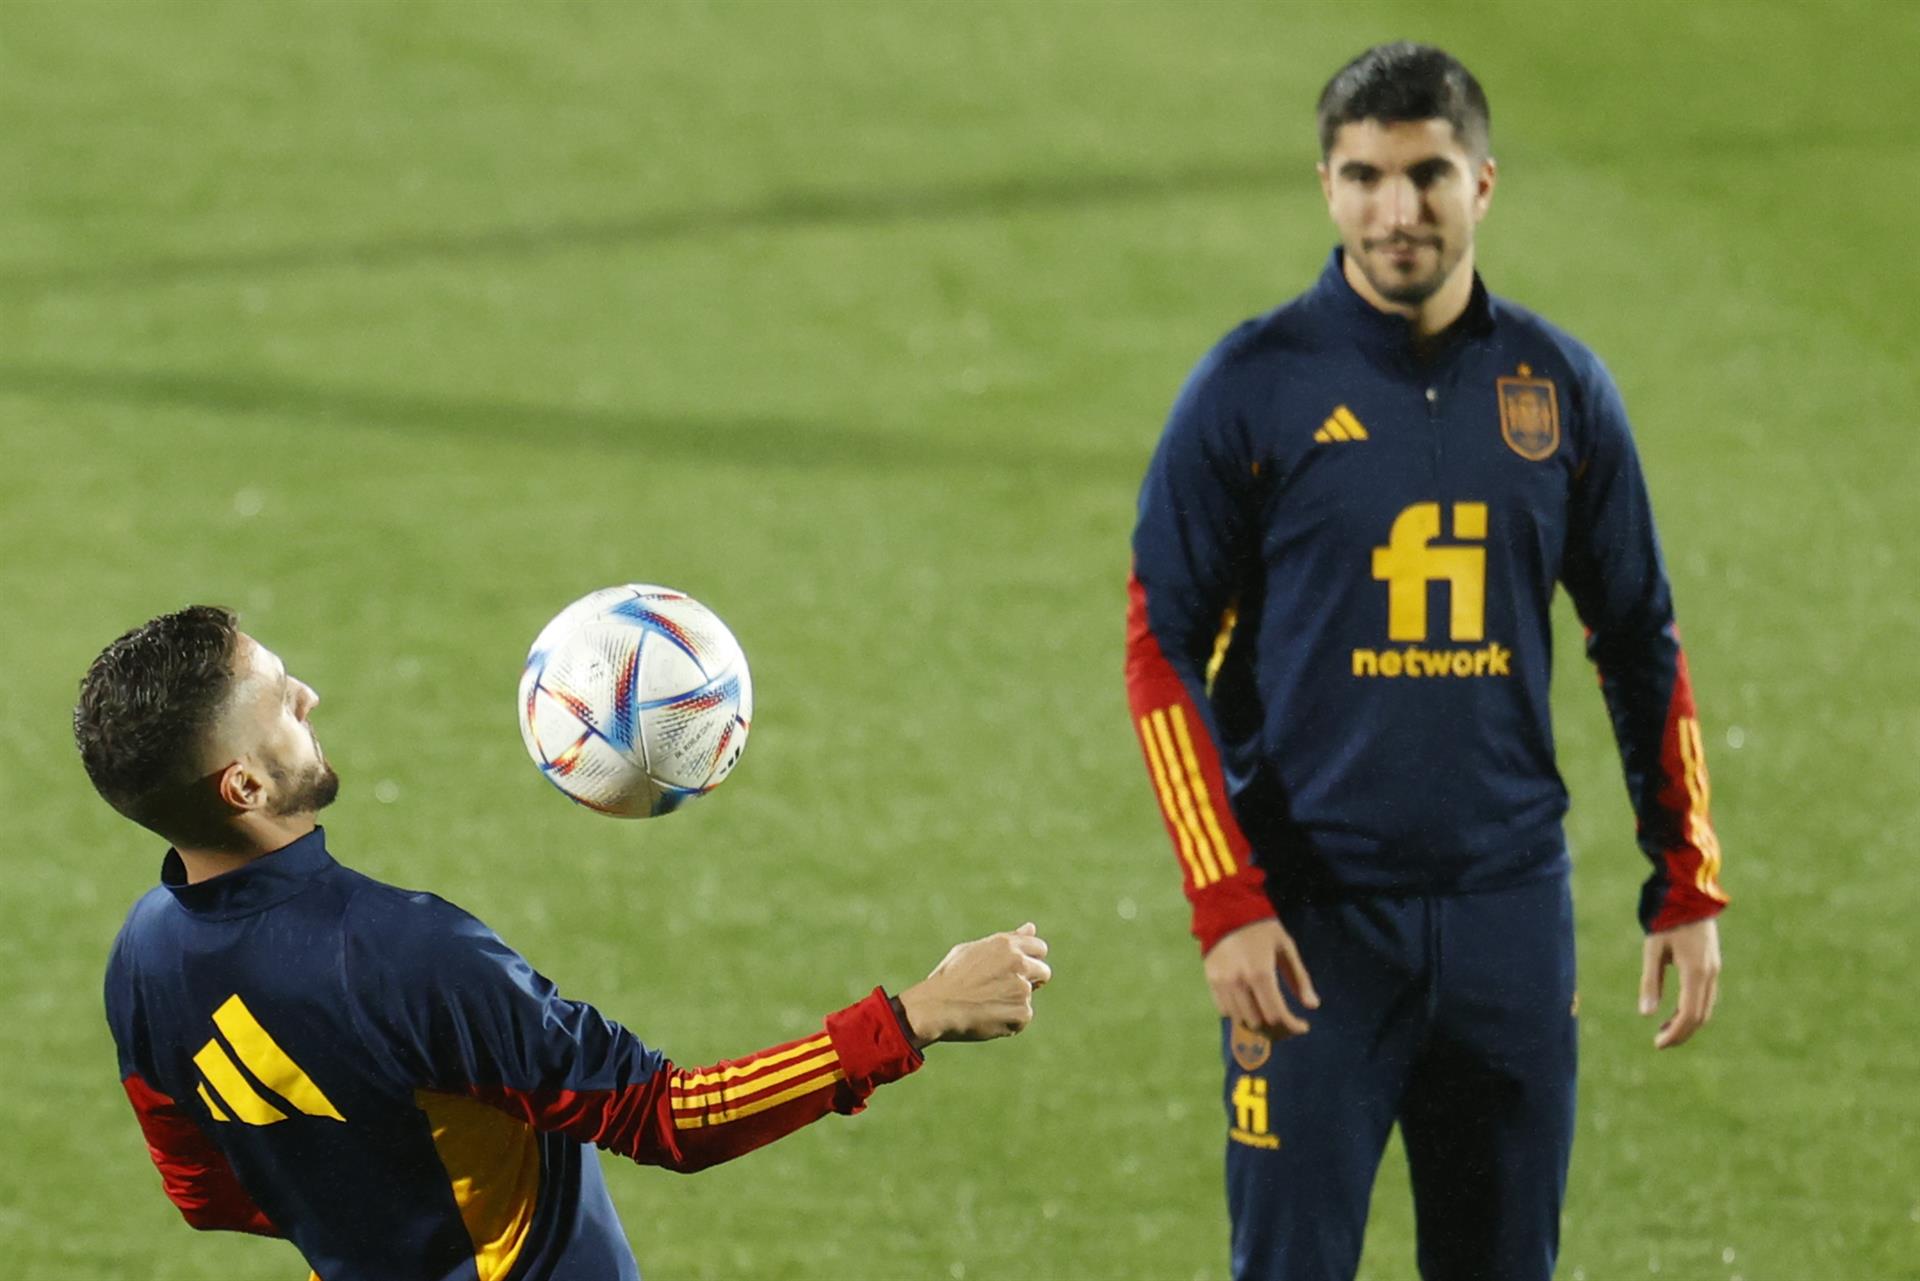 Los centrocampistas de la selección española Koke Resurrección (i) y el exvalencianista Carlos Soler (d) participan en un entrenamiento antes del Mundial de Qatar 2022, en una imagen reciente EFE/ Mariscal